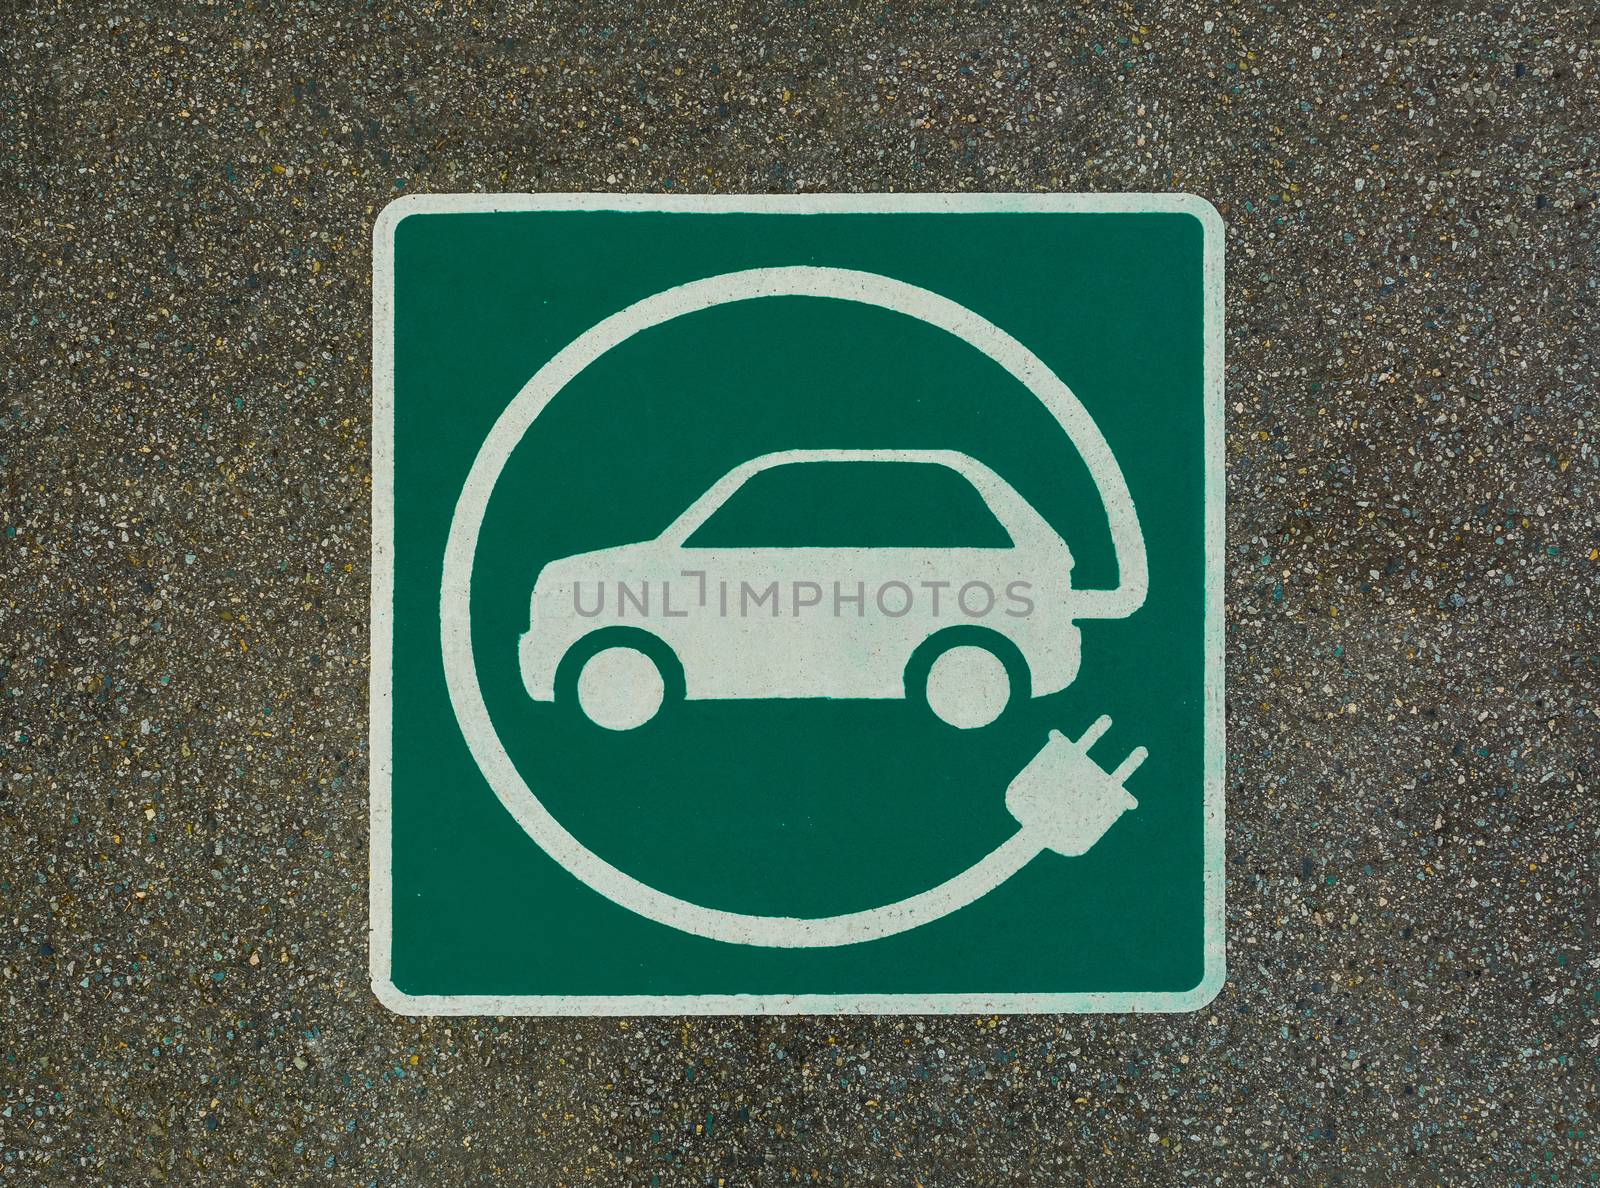 EV - electric vehicle charging station sign on asphalt. 'E' sign on asphalt texture